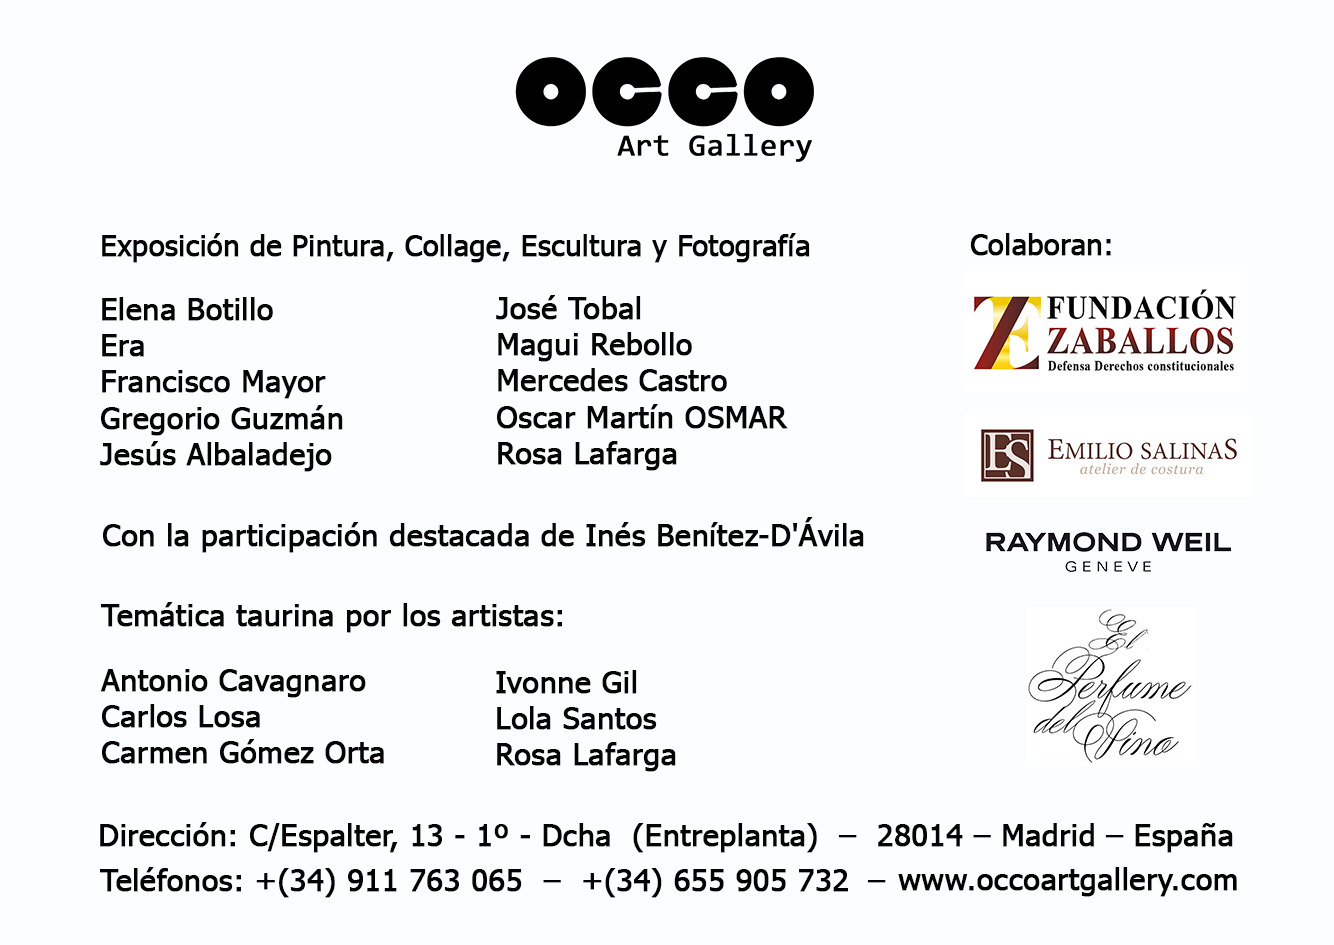 OCCO Art Gallery exposición colectiva de pintura, escultura, fotografía y grabado en Madrid.